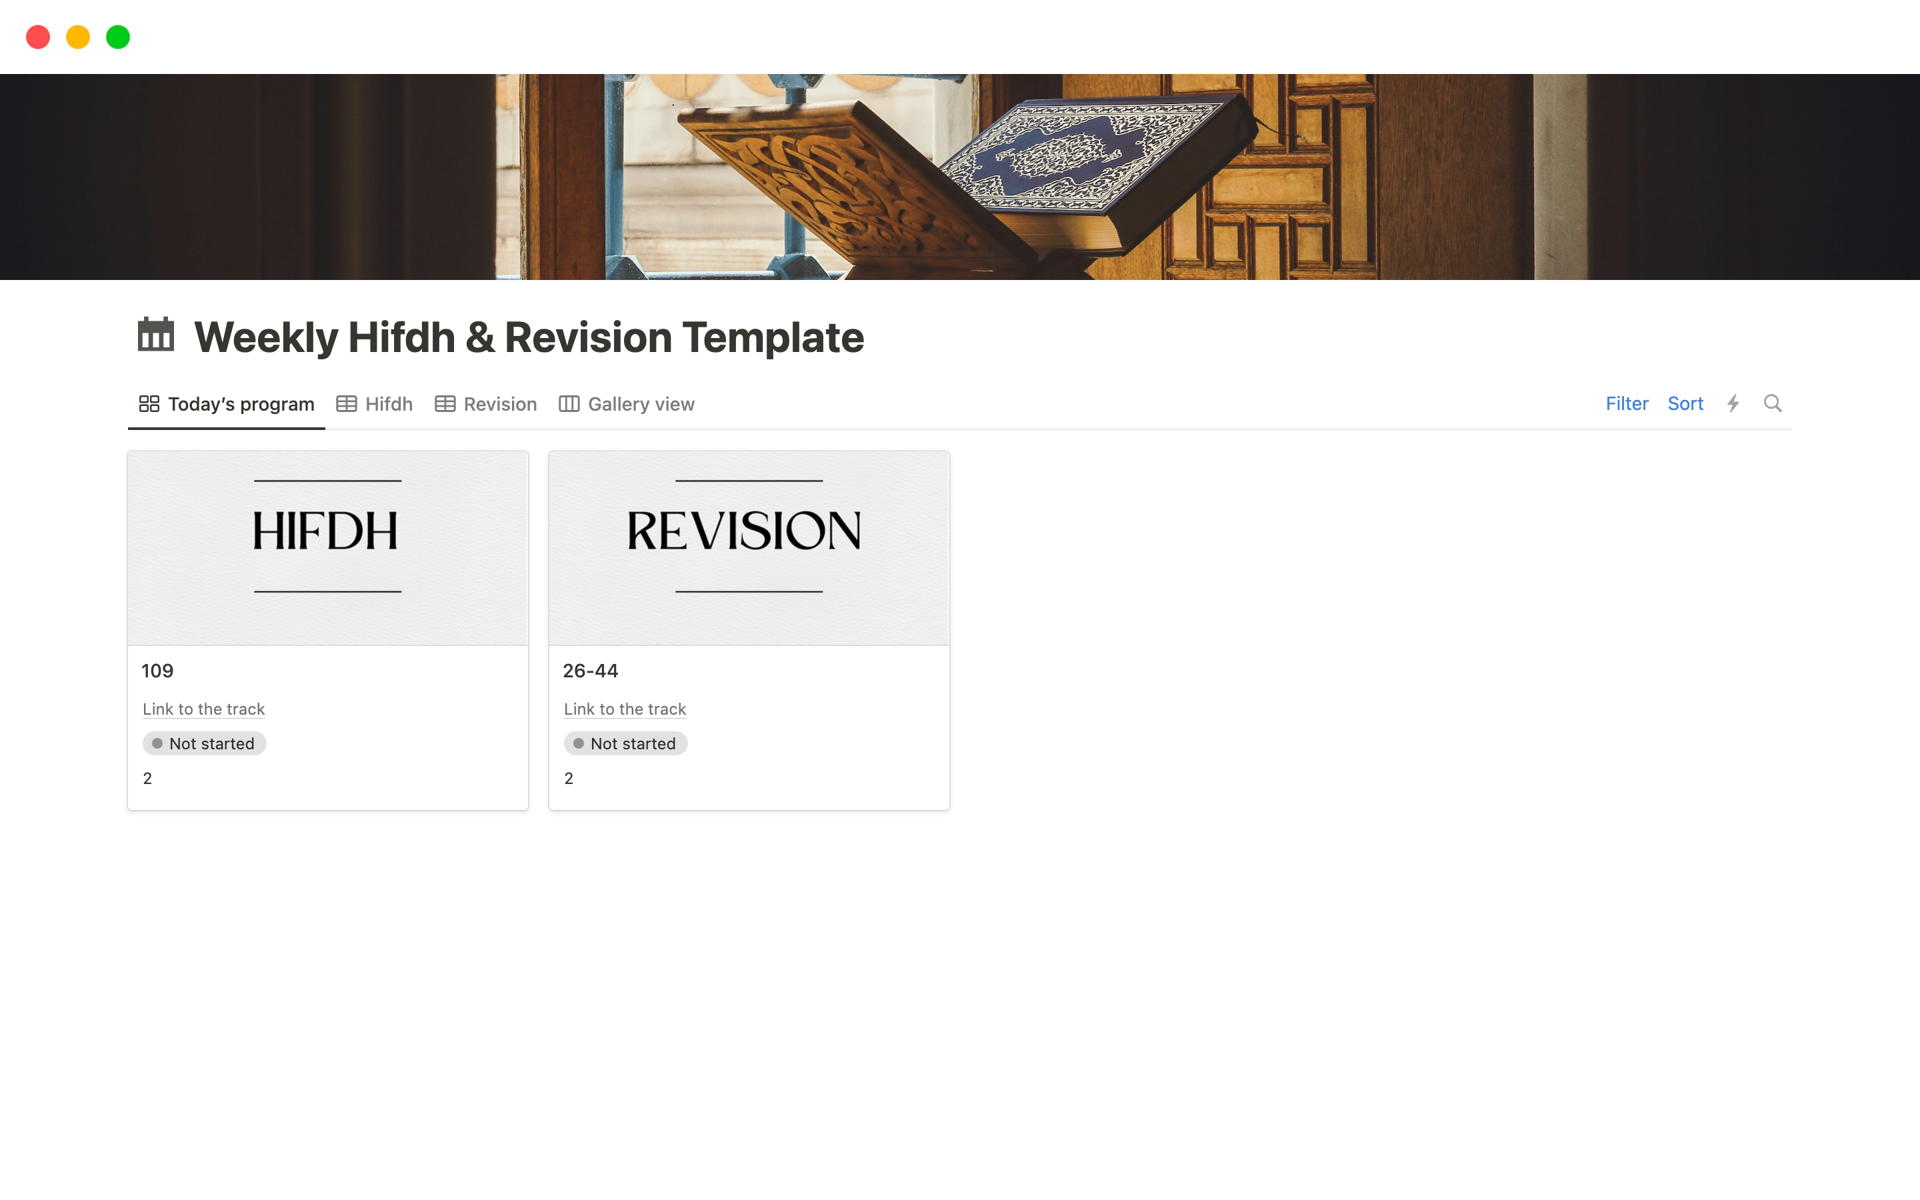 Vista previa de plantilla para Weekly Quran Hifdh & Revision Planner